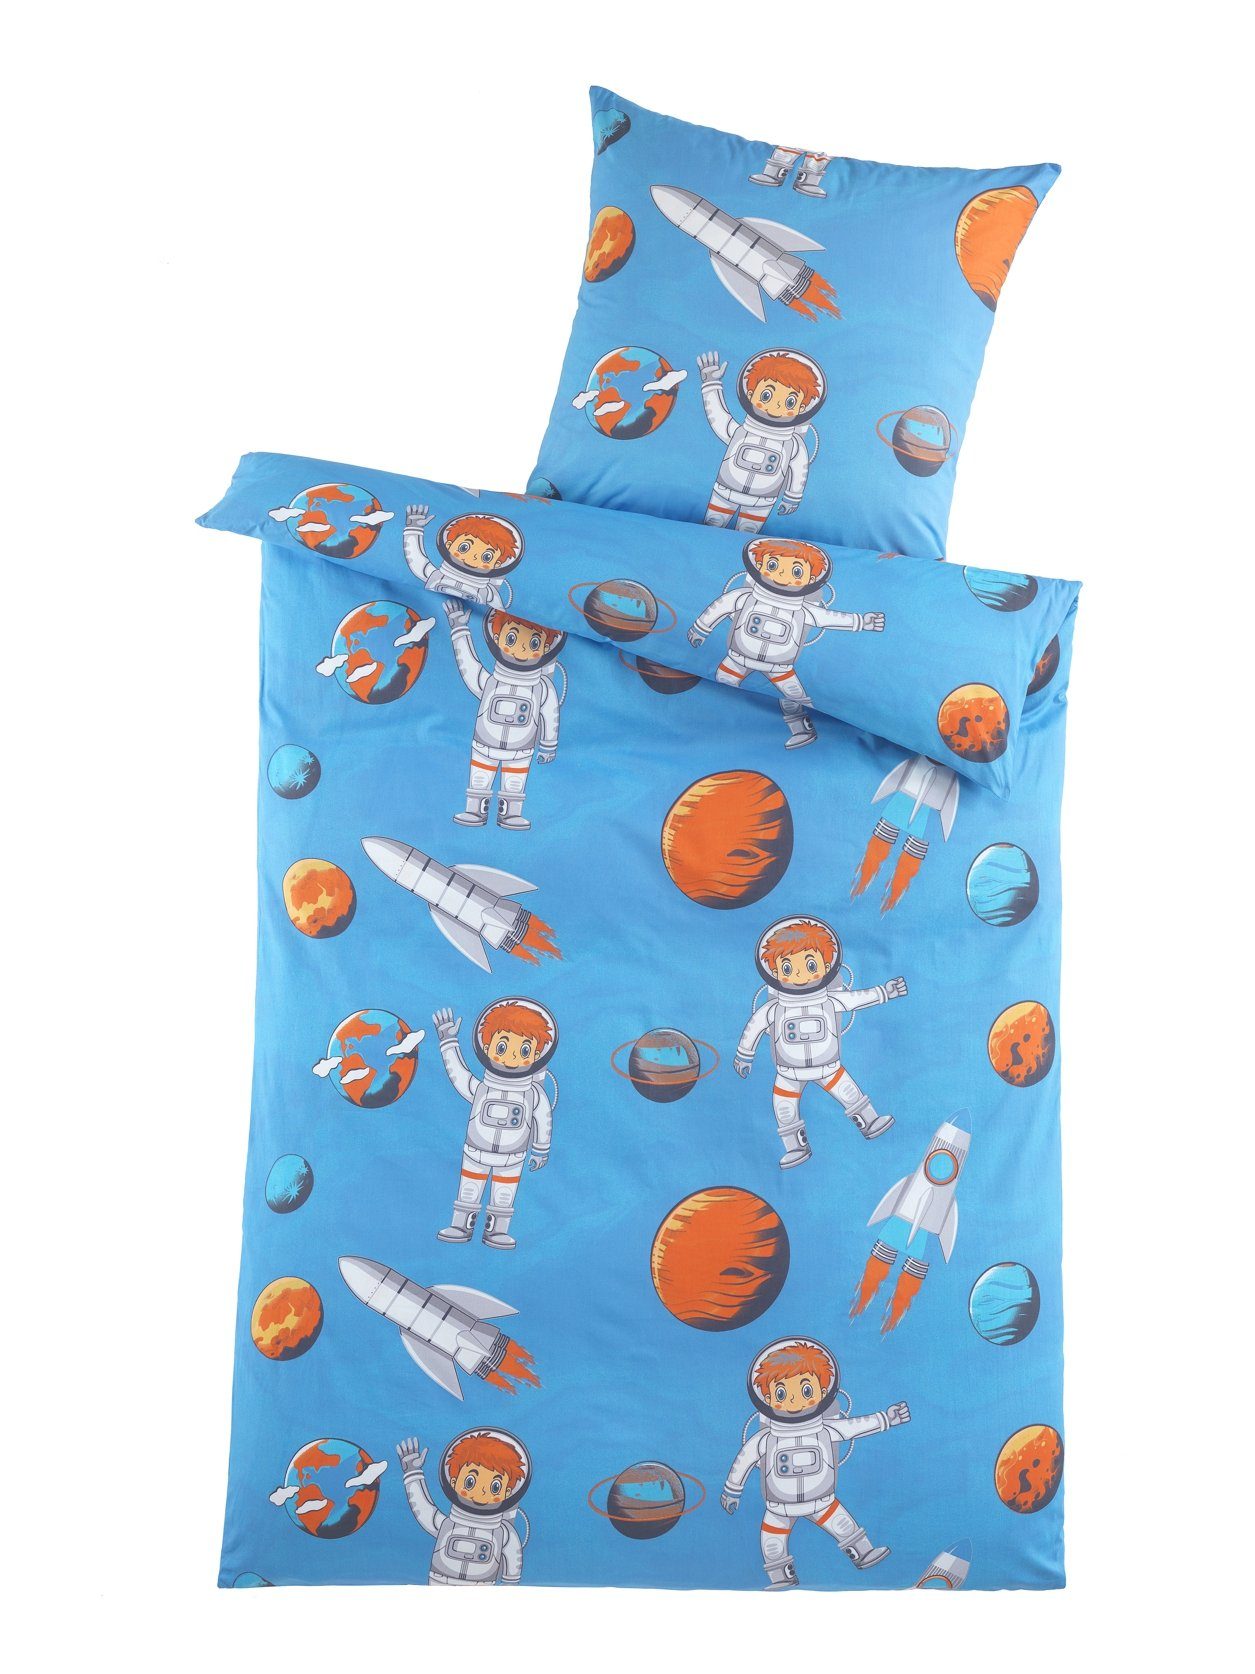 Kinderbettwäsche schöne Kinderbettwäsche mit Astronautenmotiv, 135x200cm,  Giantore